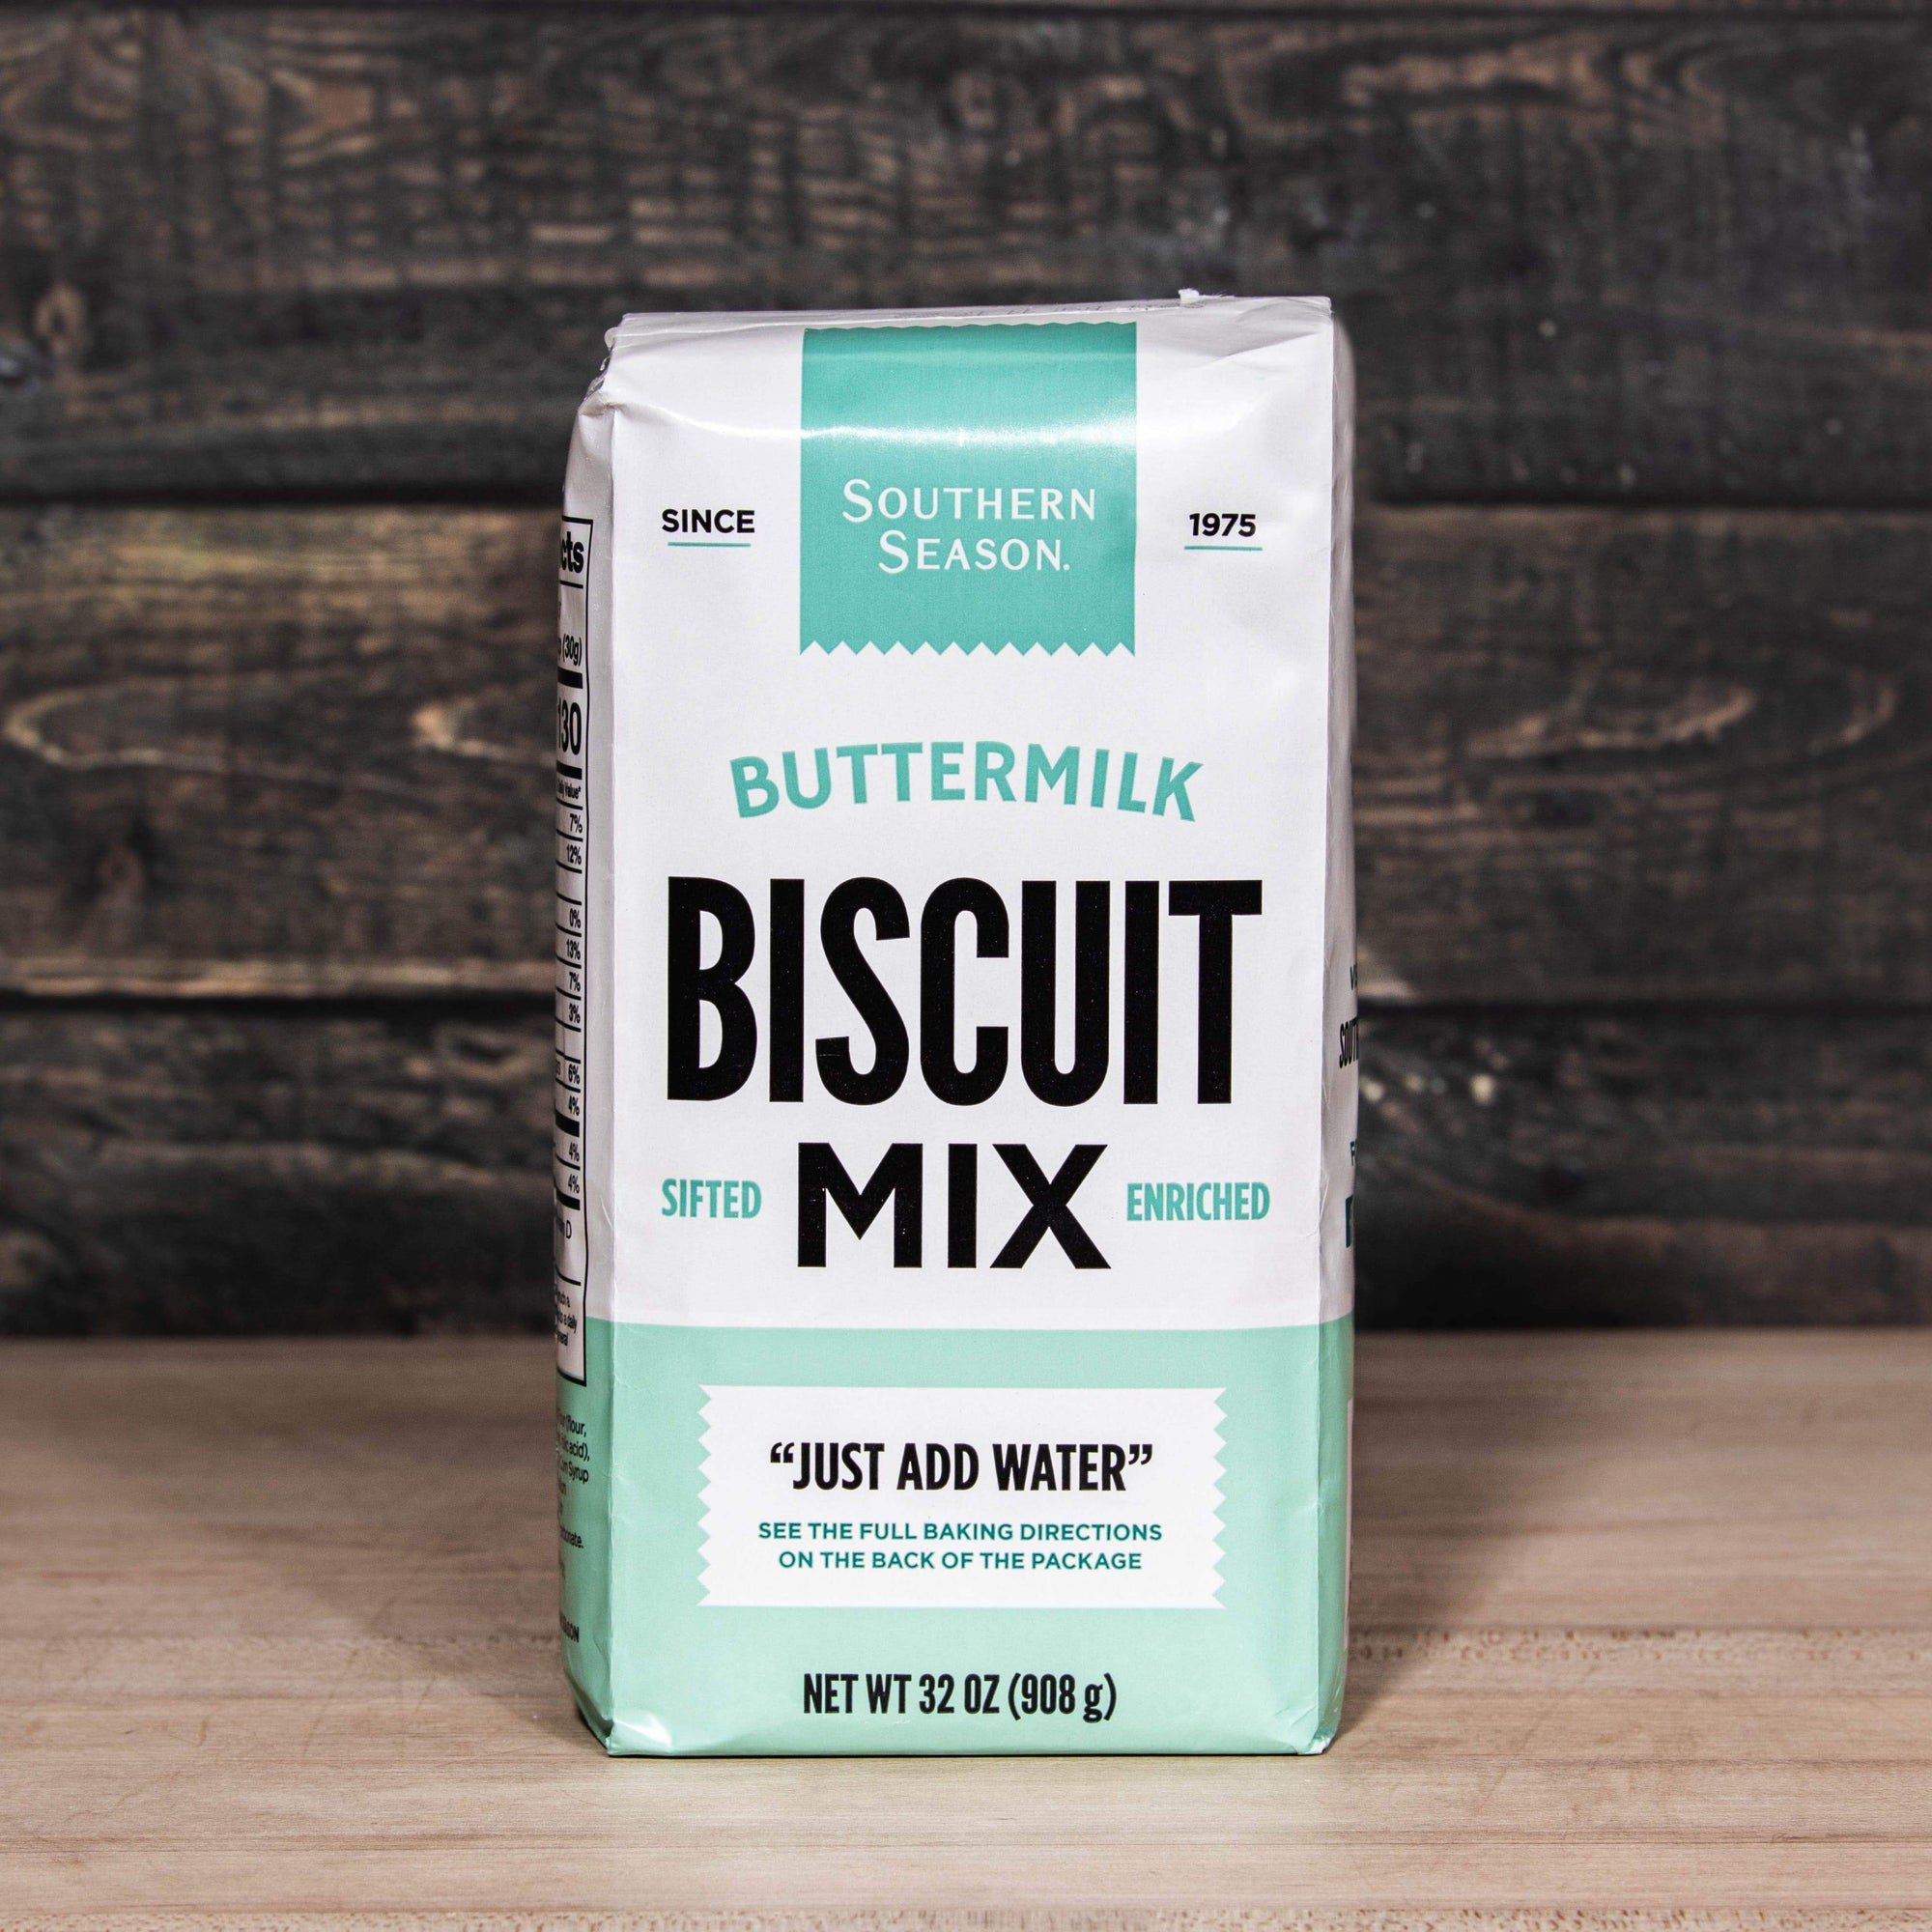 Southern Season Southern Season Buttermilk Biscuit Mix 2 lb